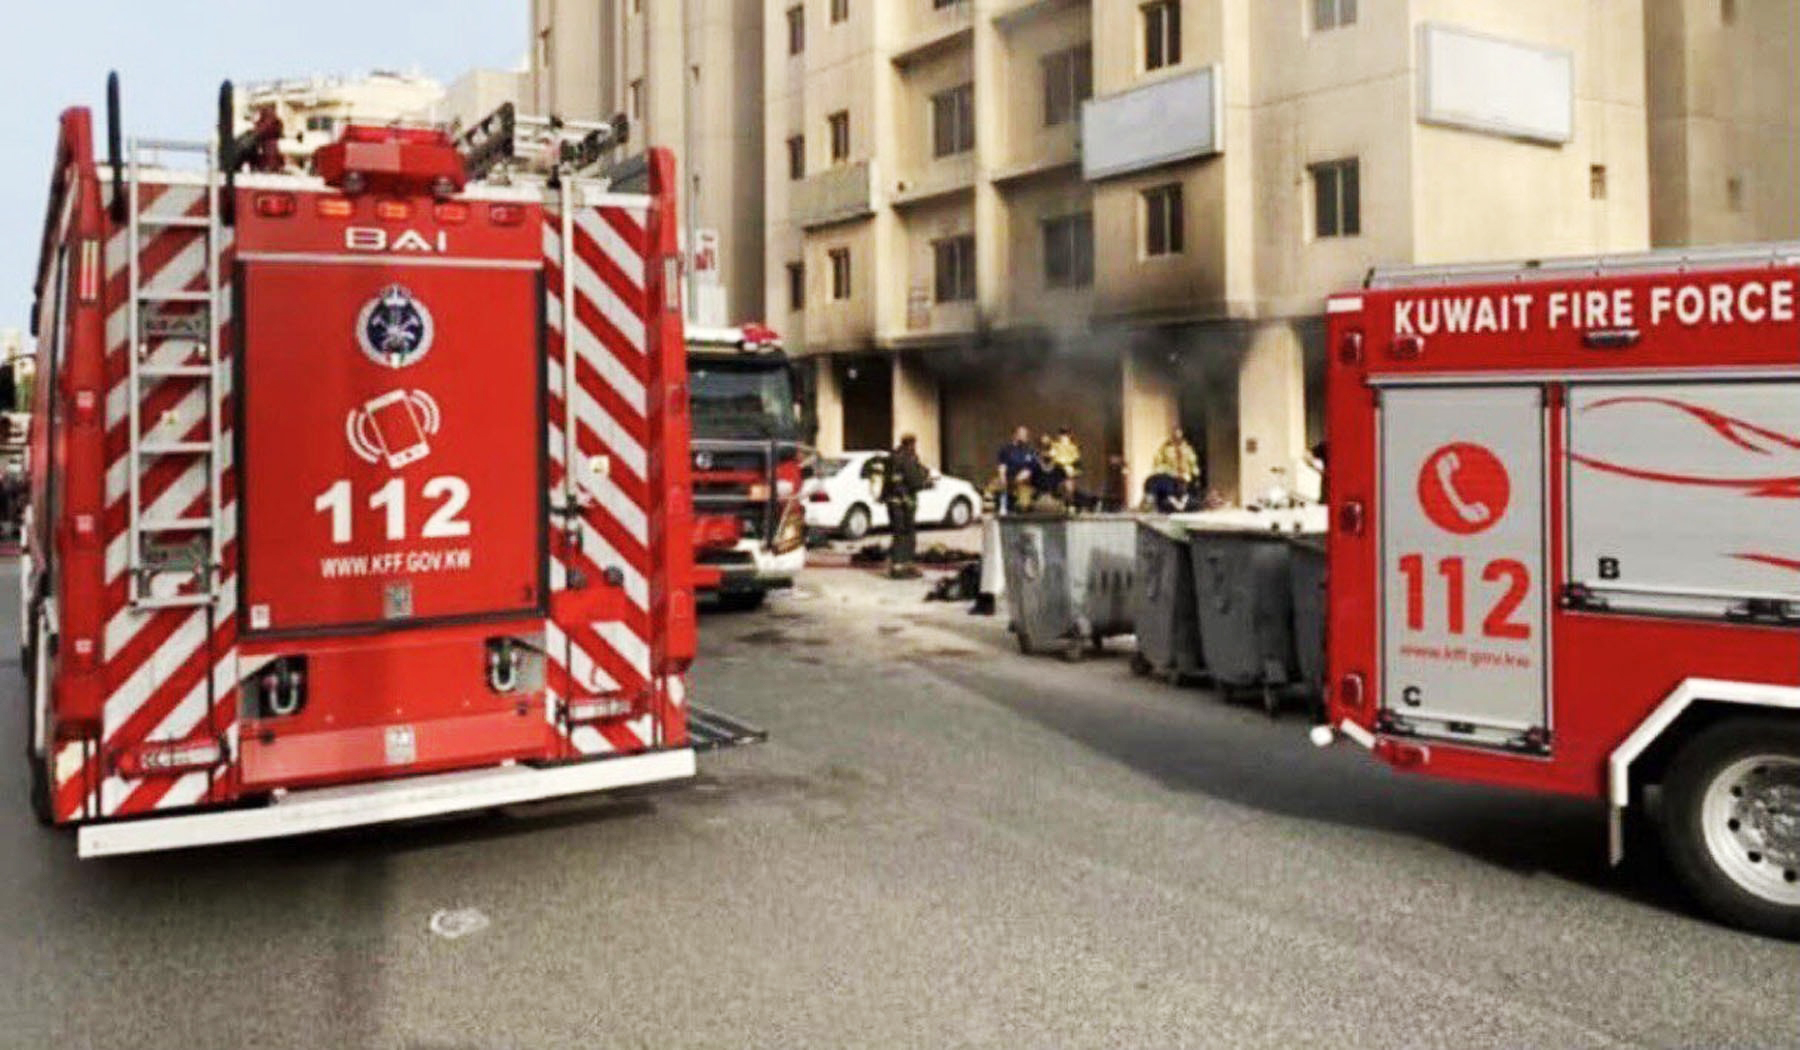 عشرات الوفيات في حريق بمبنيين سكنيين جنوب الكويت | أخبار – البوكس نيوز